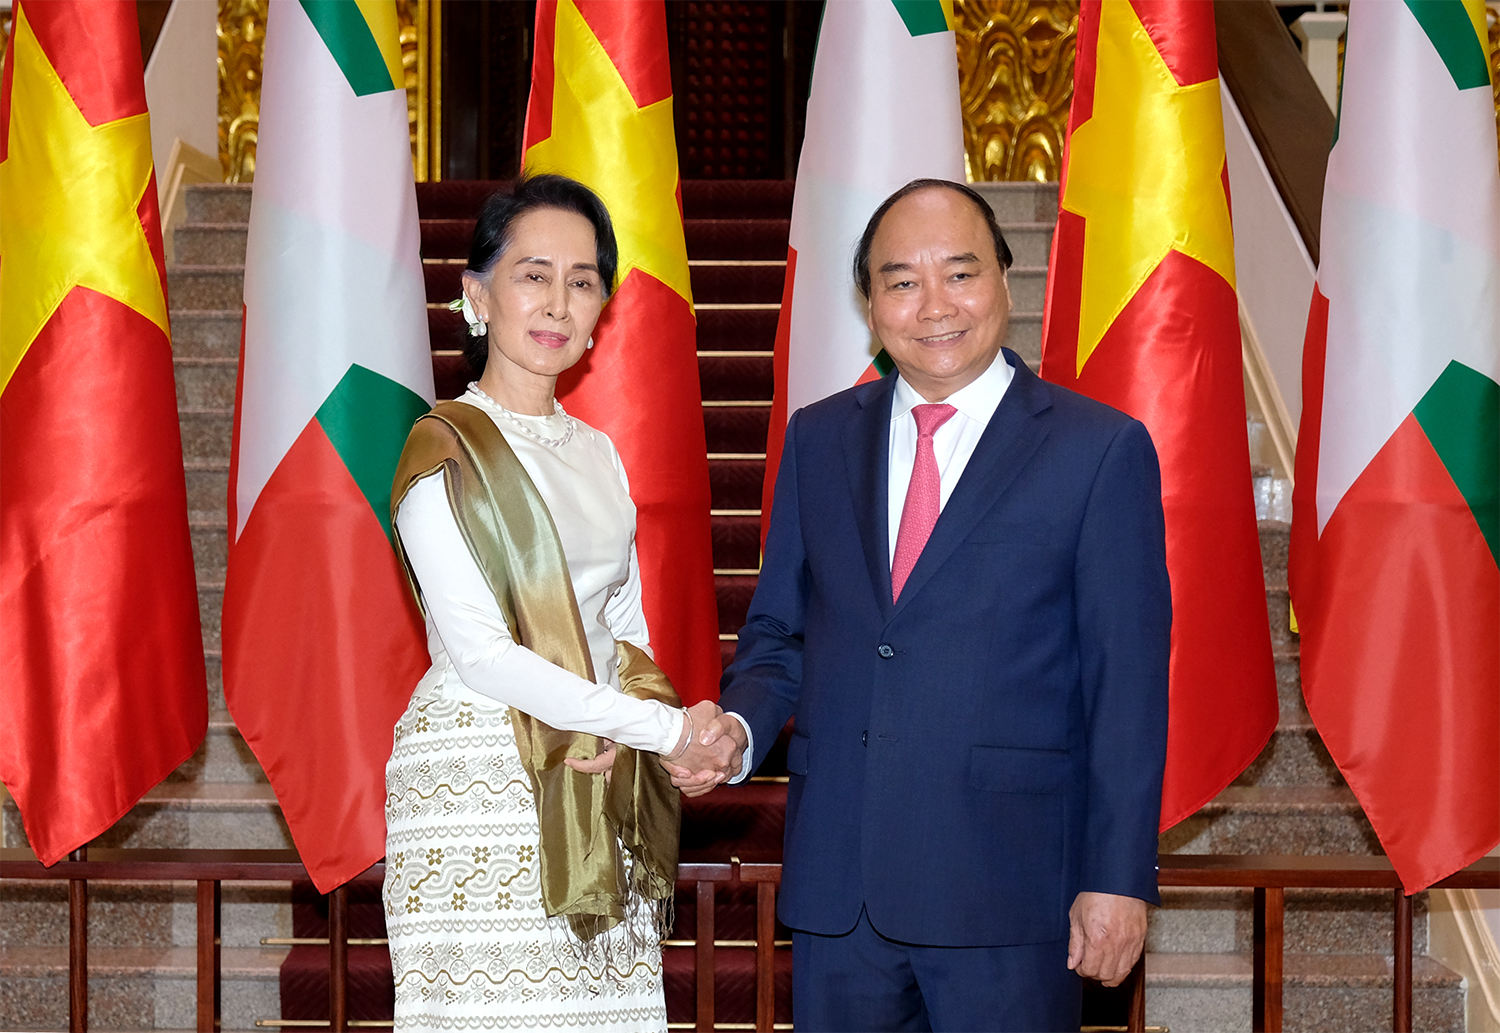 Chiều 19/4, Thủ tướng Nguyễn Xuân Phúc chủ trì lễ đón trọng thể Cố vấn Nhà nước, Bộ trưởng Bộ Ngoại giao và Bộ trưởng Văn phòng Tổng thống Cộng hòa Liên bang Myanmar Aung San Suu Kyi và sau đó, hai bên tiến hành hội đàm.